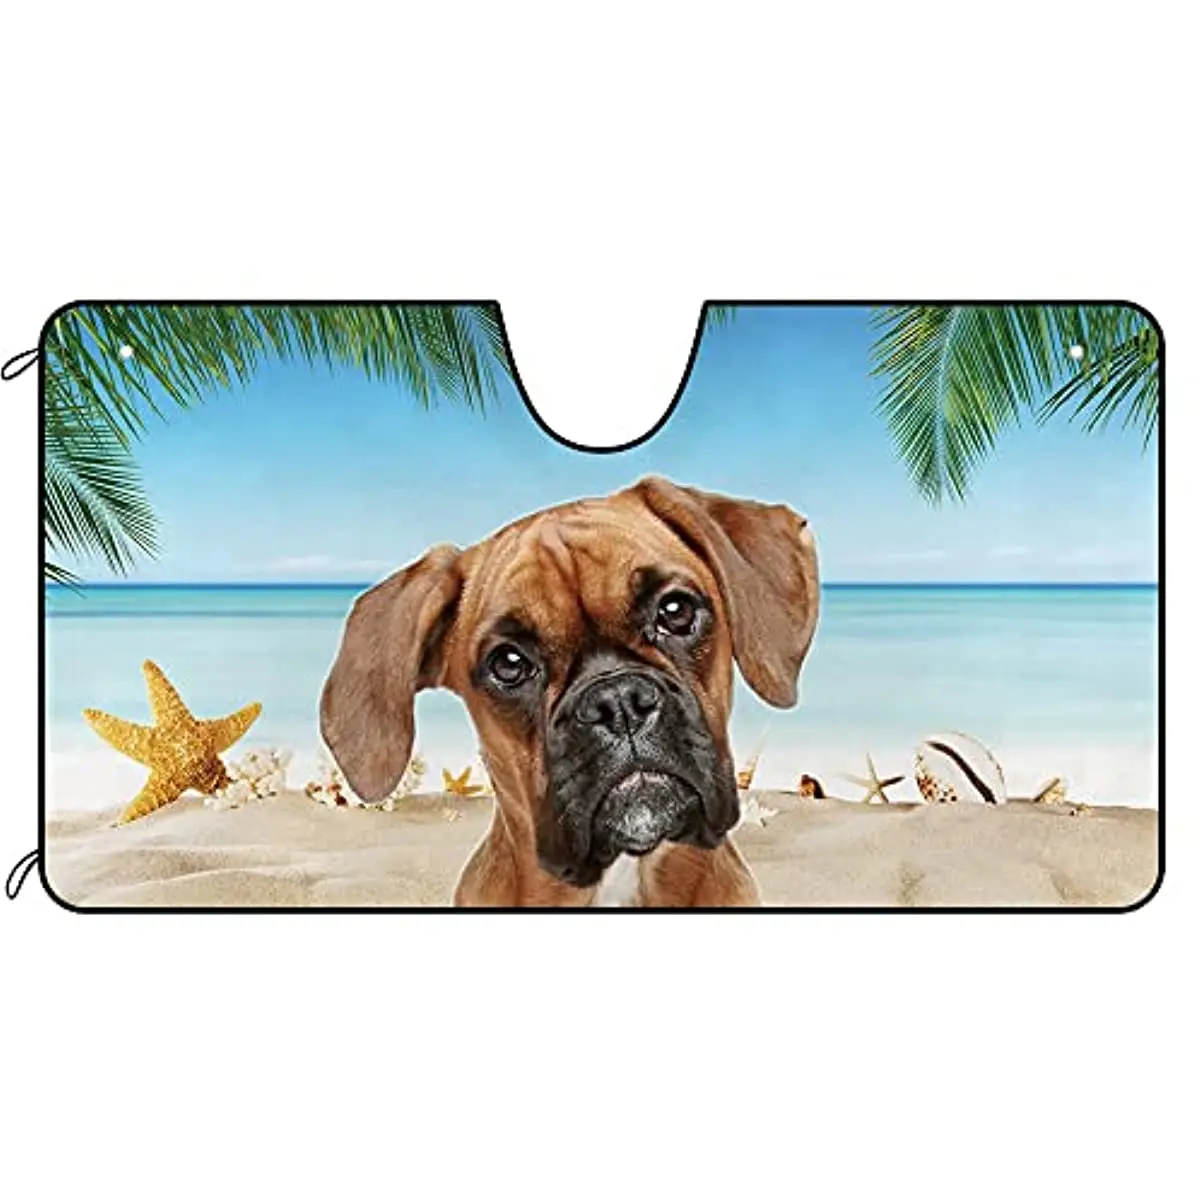 

Солнцезащитный козырек на лобовое стекло кафето для собак милая собака на пляже Декор Автомобиль переднее ветровое стекло Солнцезащитный козырек отражающий УФ-луч